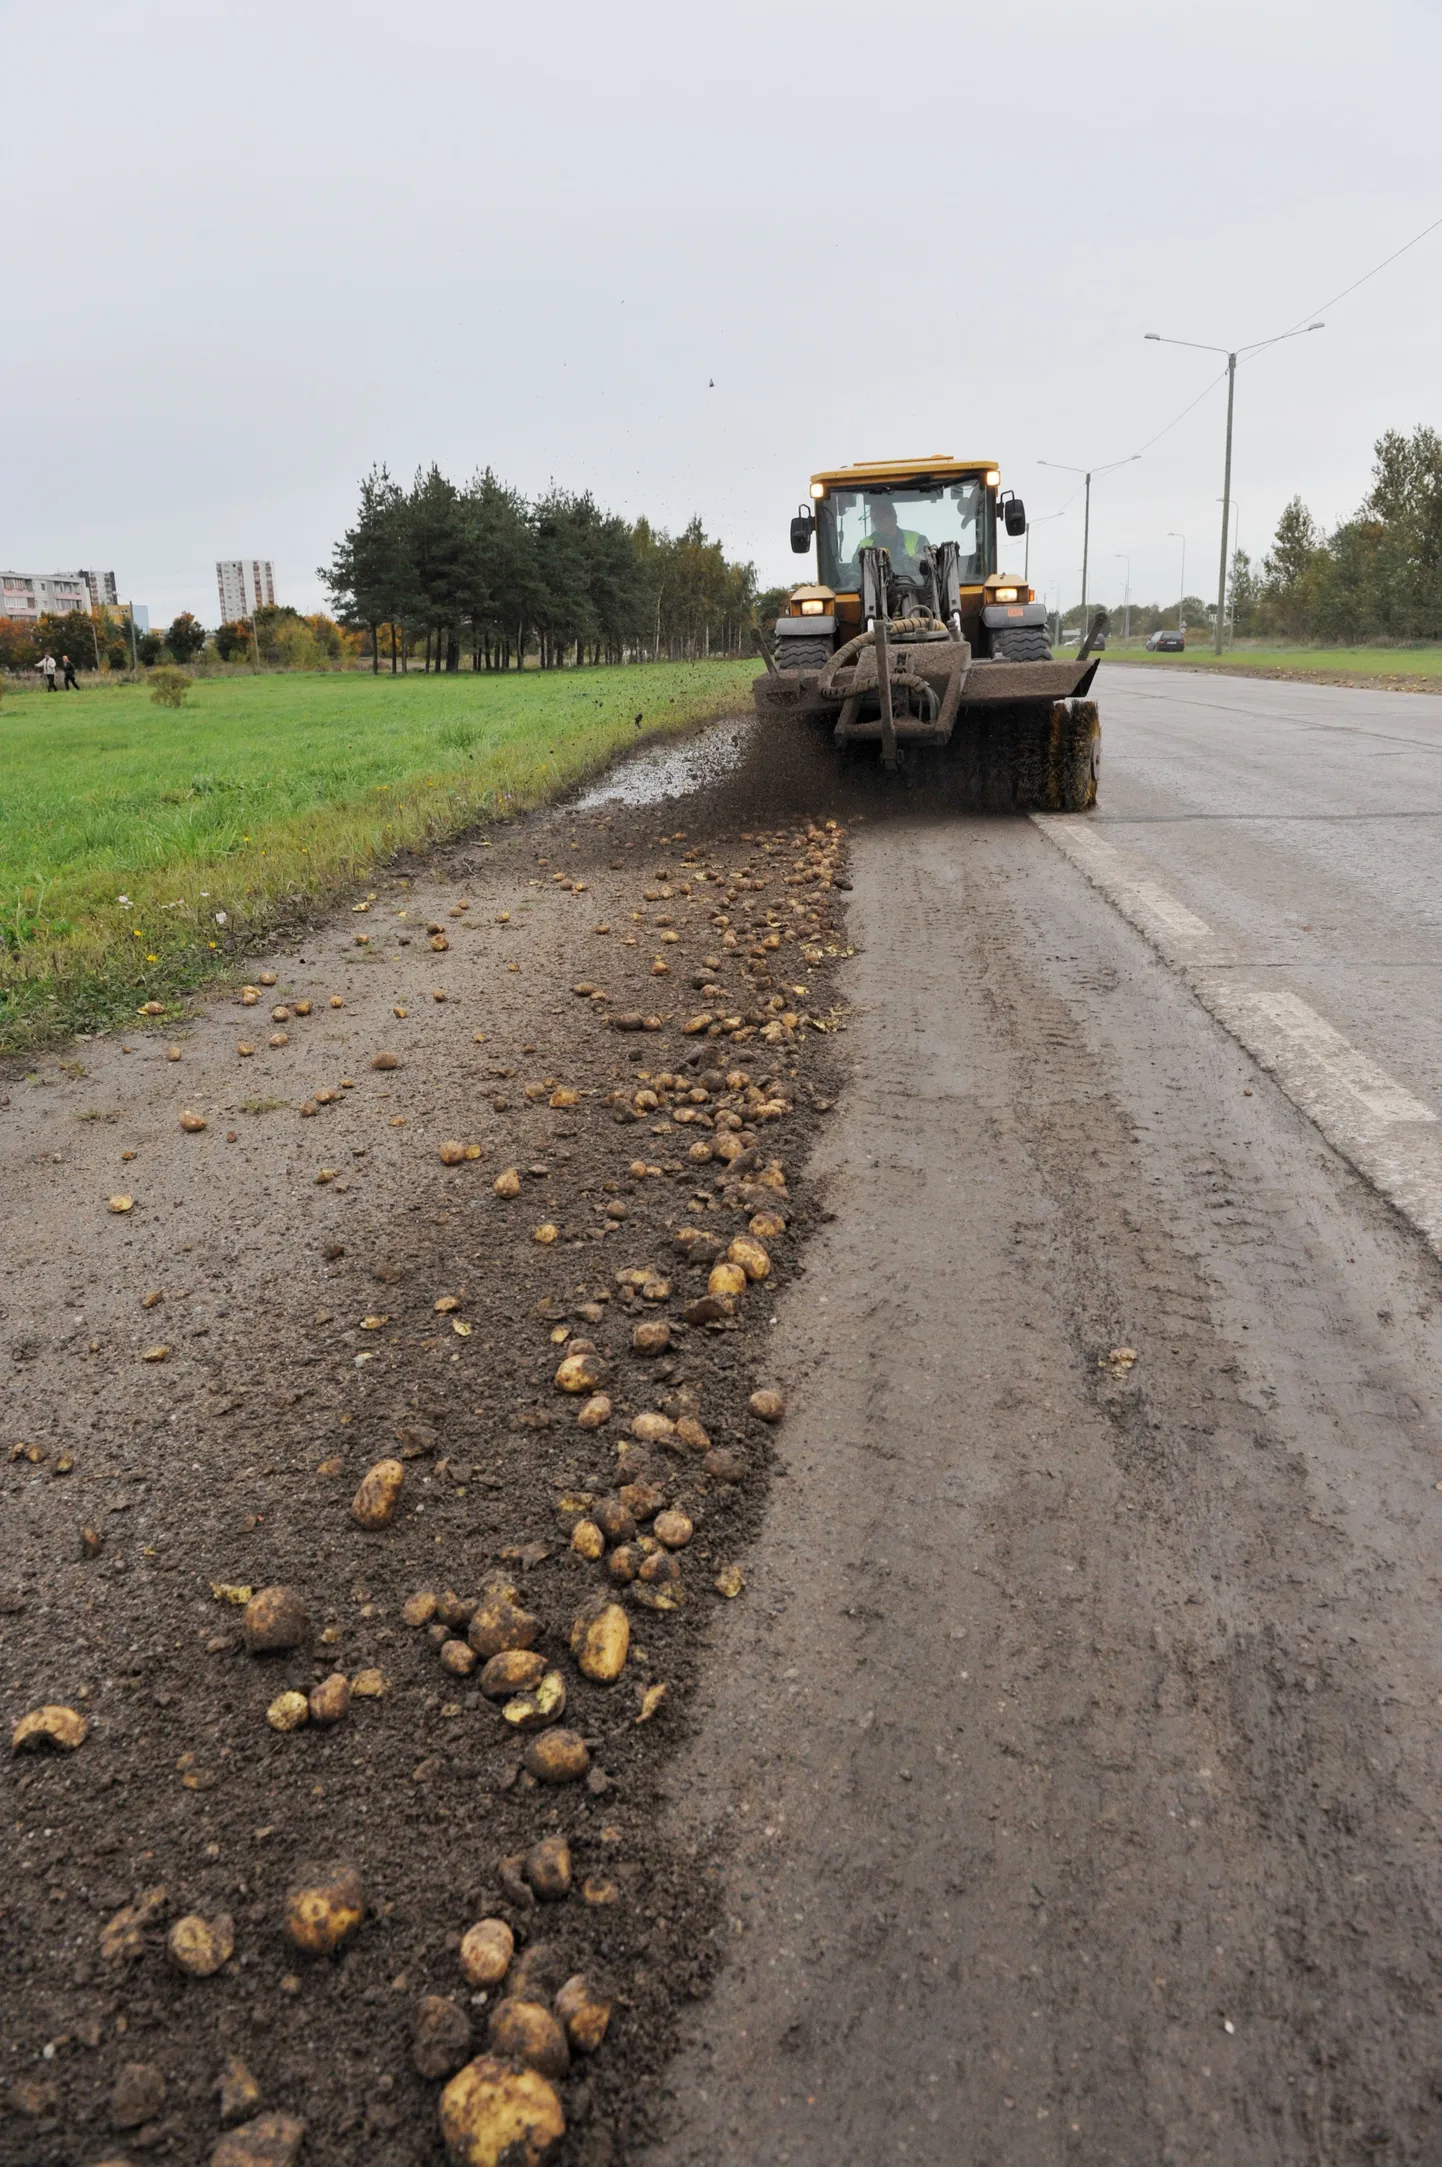 Täna lõuna ajal pudenes ilmselt mõne veoki koormast Peterburi teele suur hulk kartuleid.